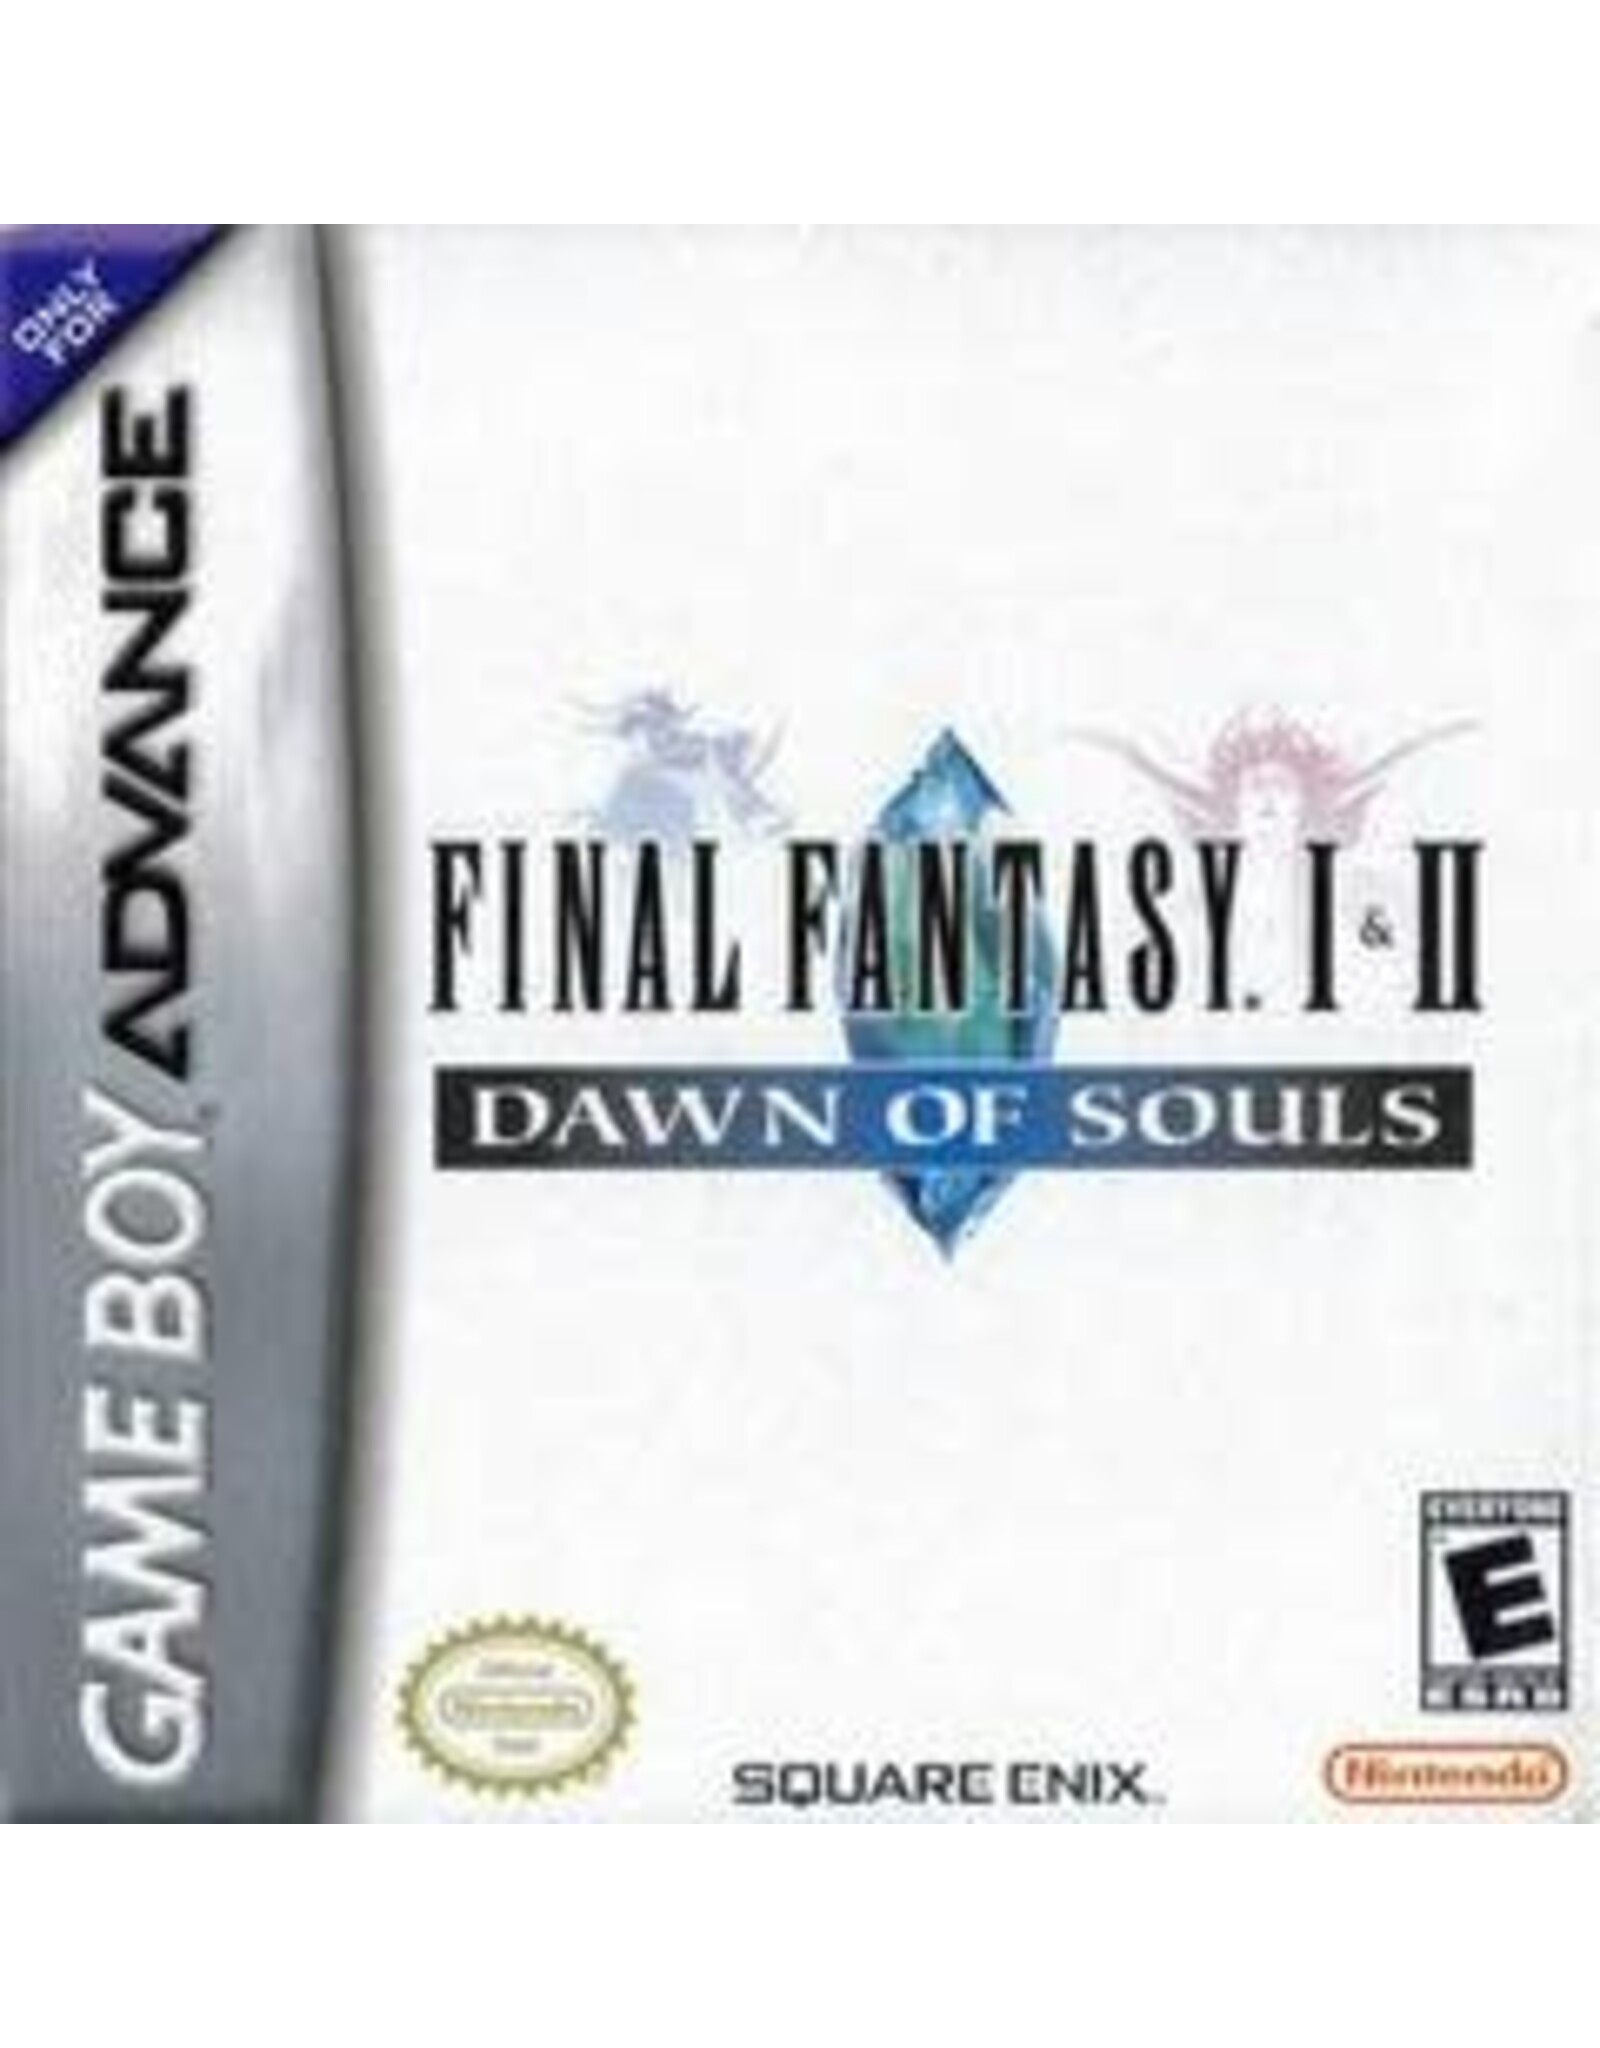 Game Boy Advance Final Fantasy I & II Dawn of Souls (CiB, Damaged Box)